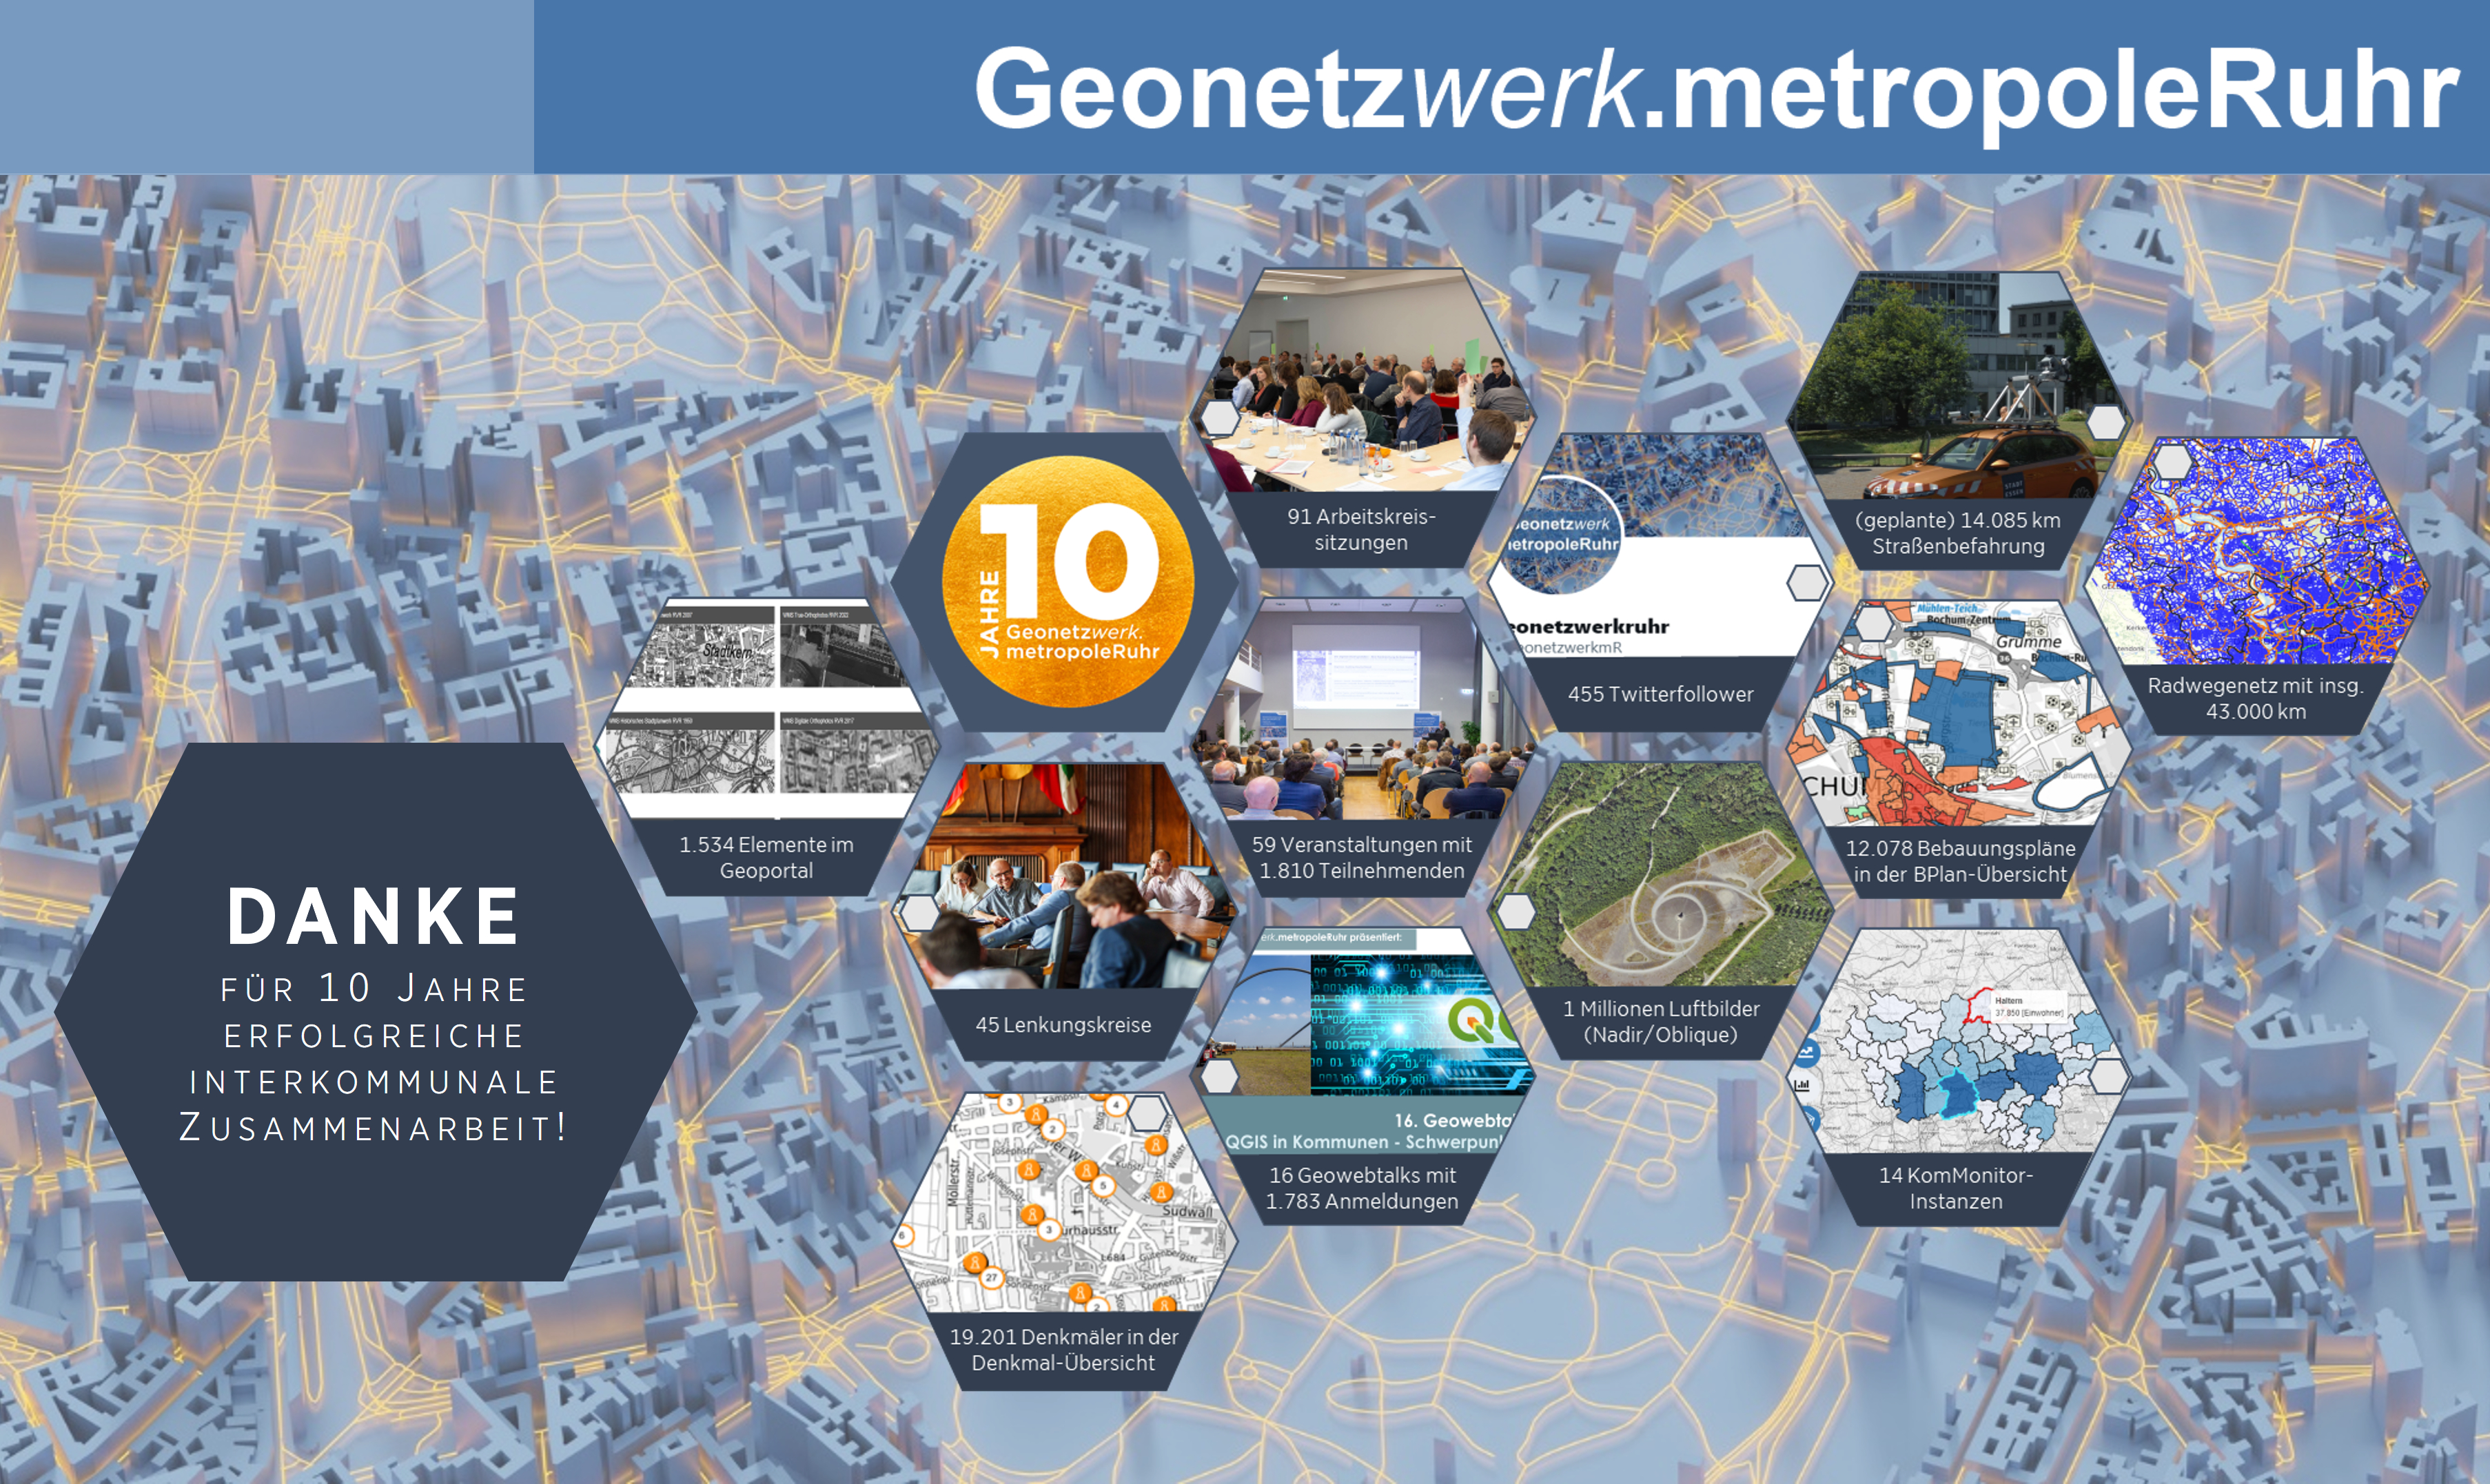 Kennzahlen beschreiben die Erfolge des Geonetzwerks - 1 Millionen Luftbilder, 91 Arbeitskreise, 14.000 geplante km Straßenbefahrung etc.